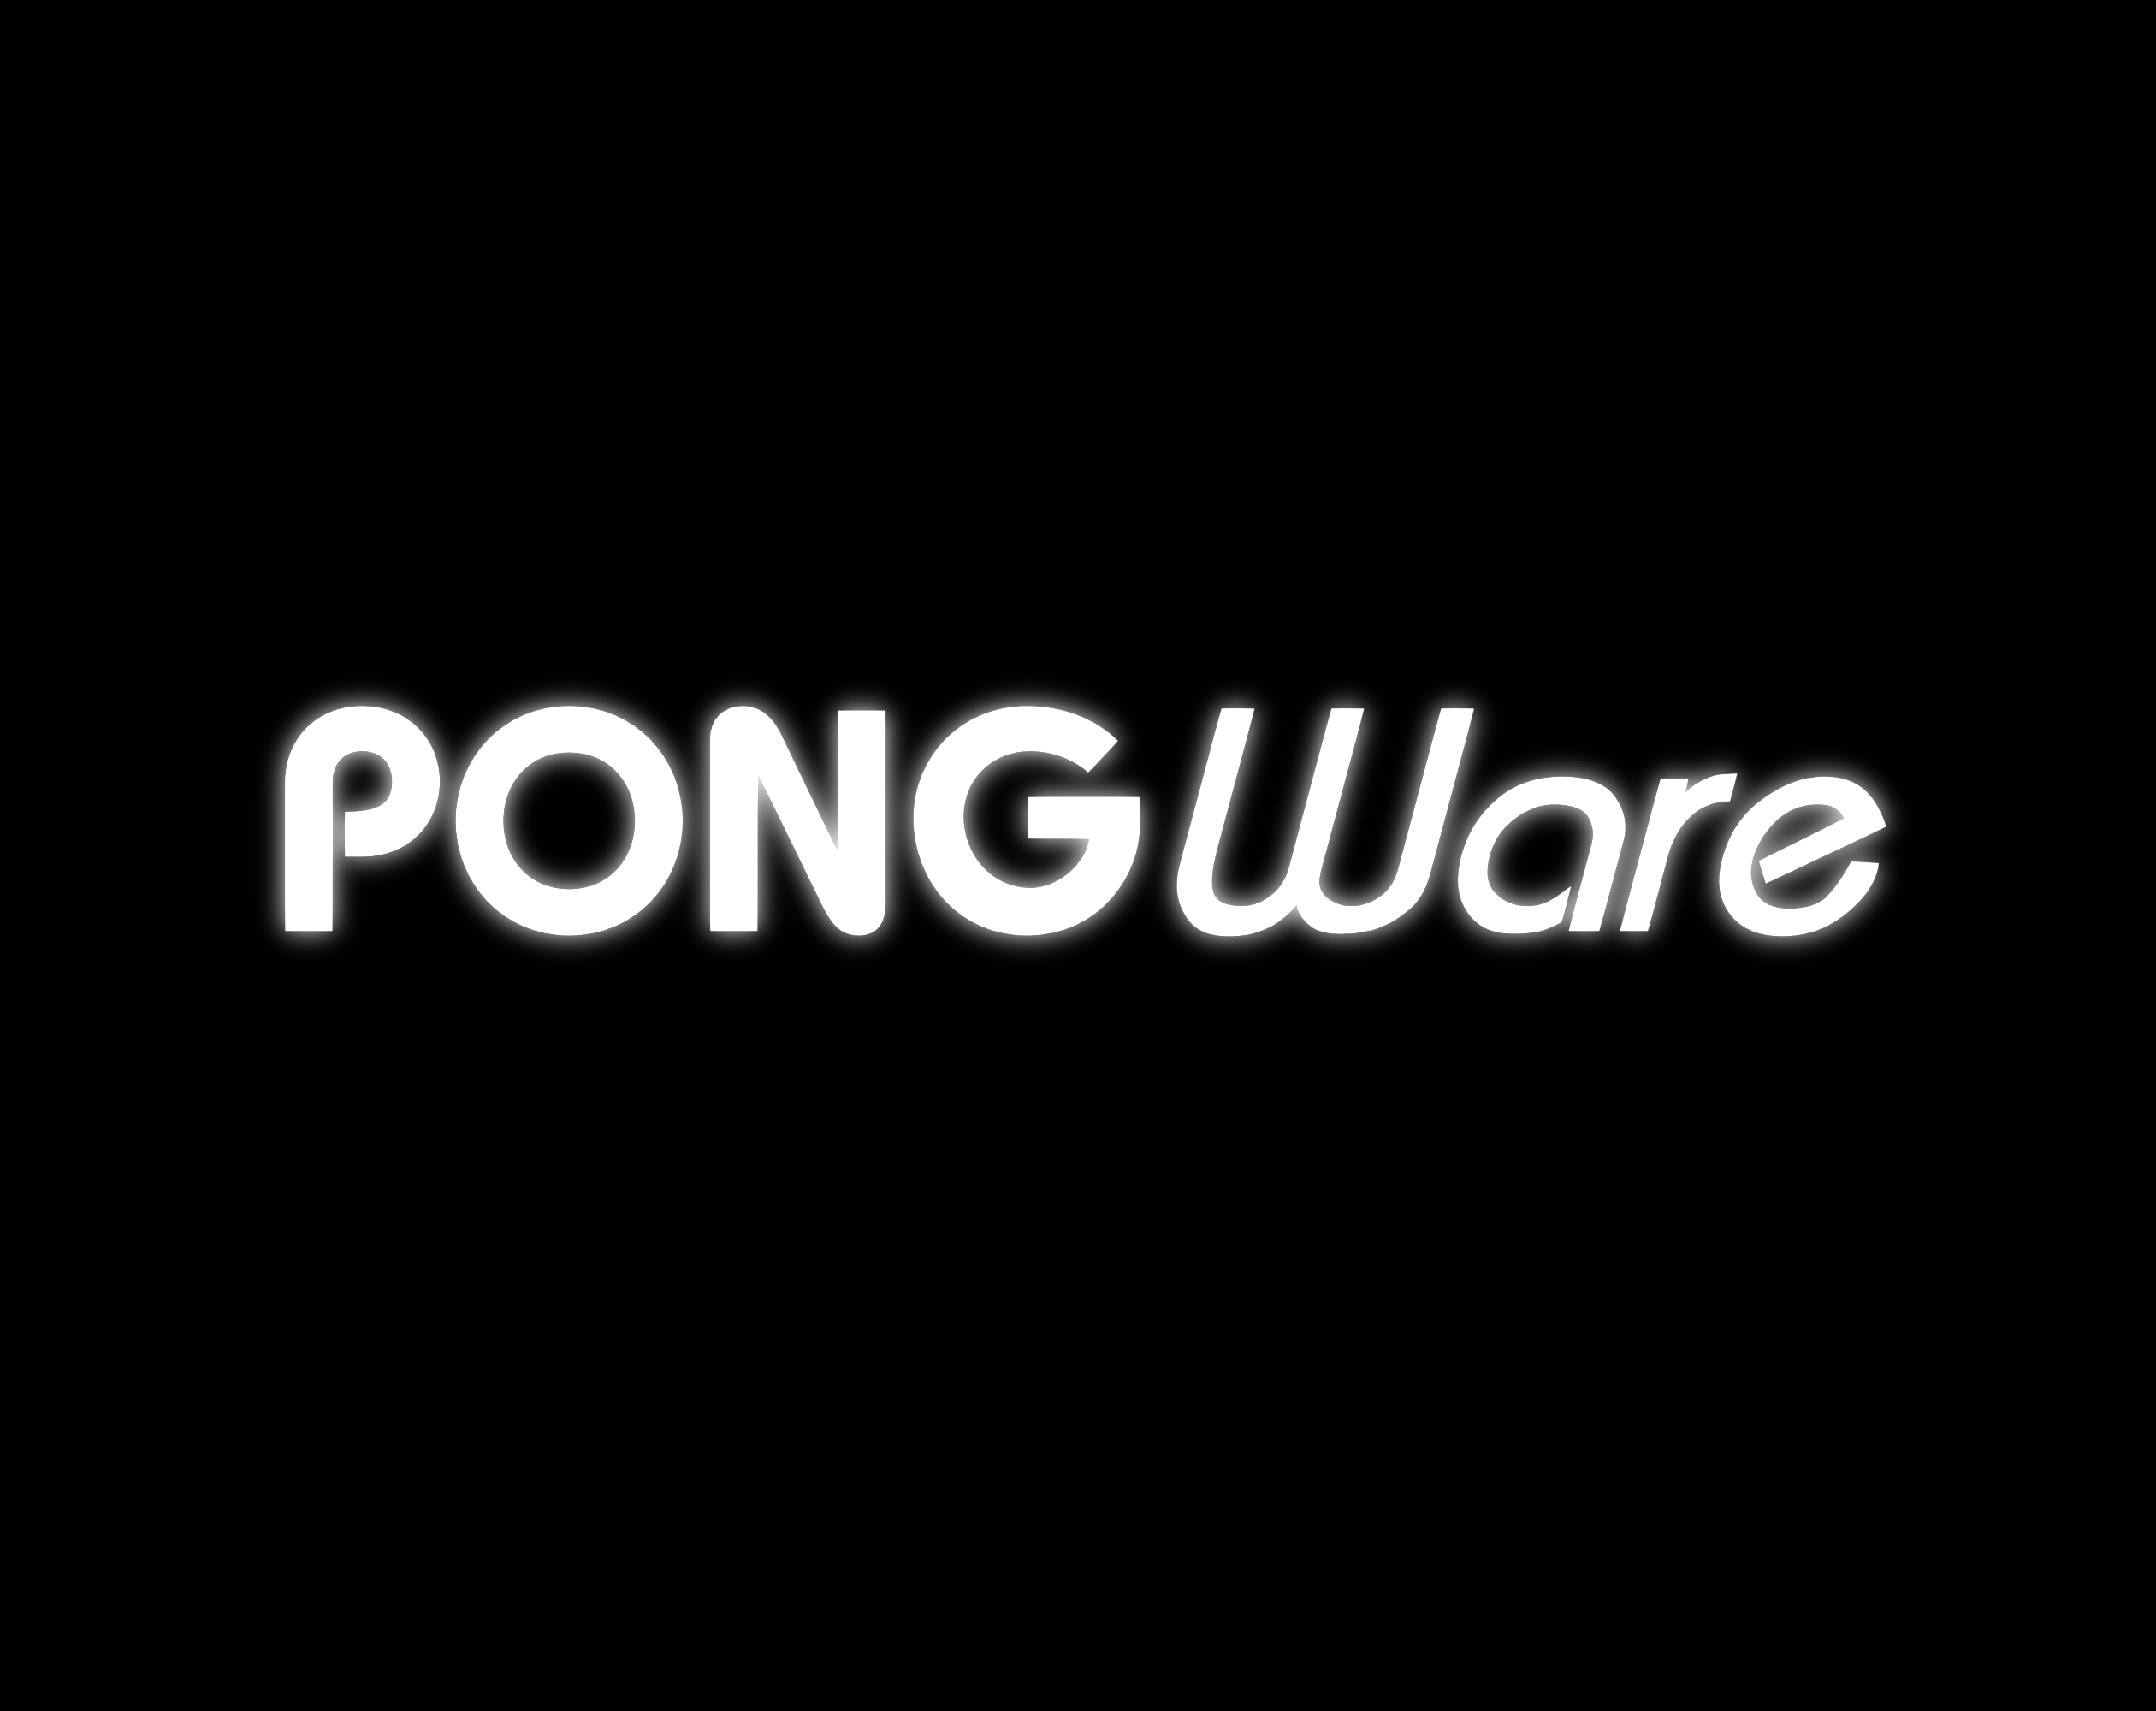 Pongware by Nezt50 for GMTK Game Jam 2023 